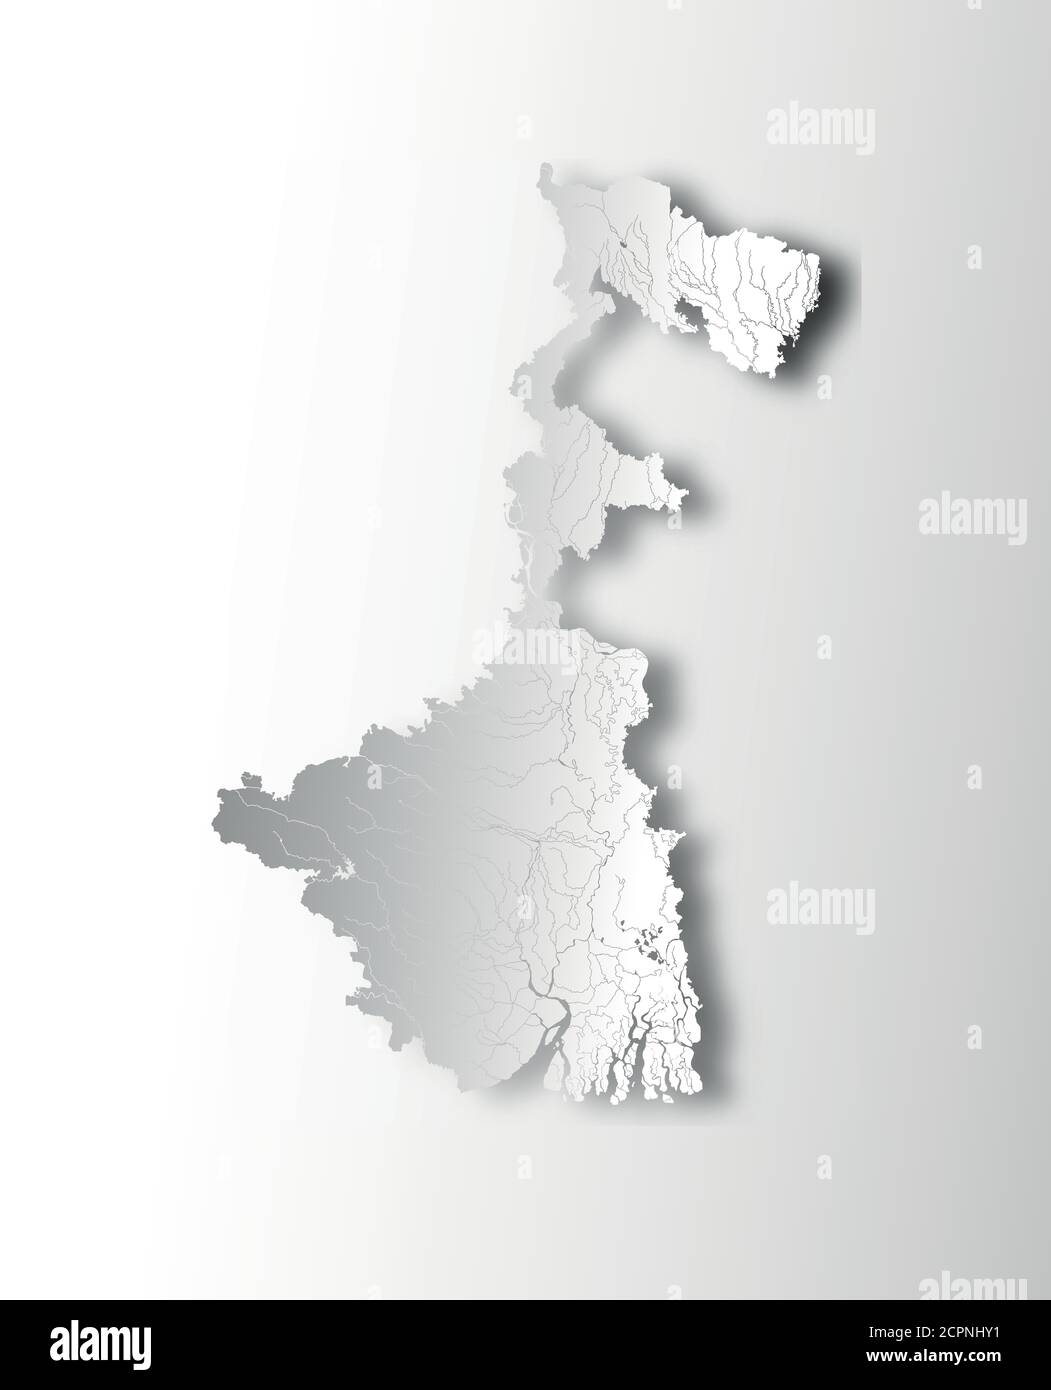 Stati dell'India - mappa del Bengala Occidentale con effetto di taglio della carta. Fiumi e laghi sono mostrati. Guardate le mie altre immagini di serie cartografiche - lo sono Illustrazione Vettoriale